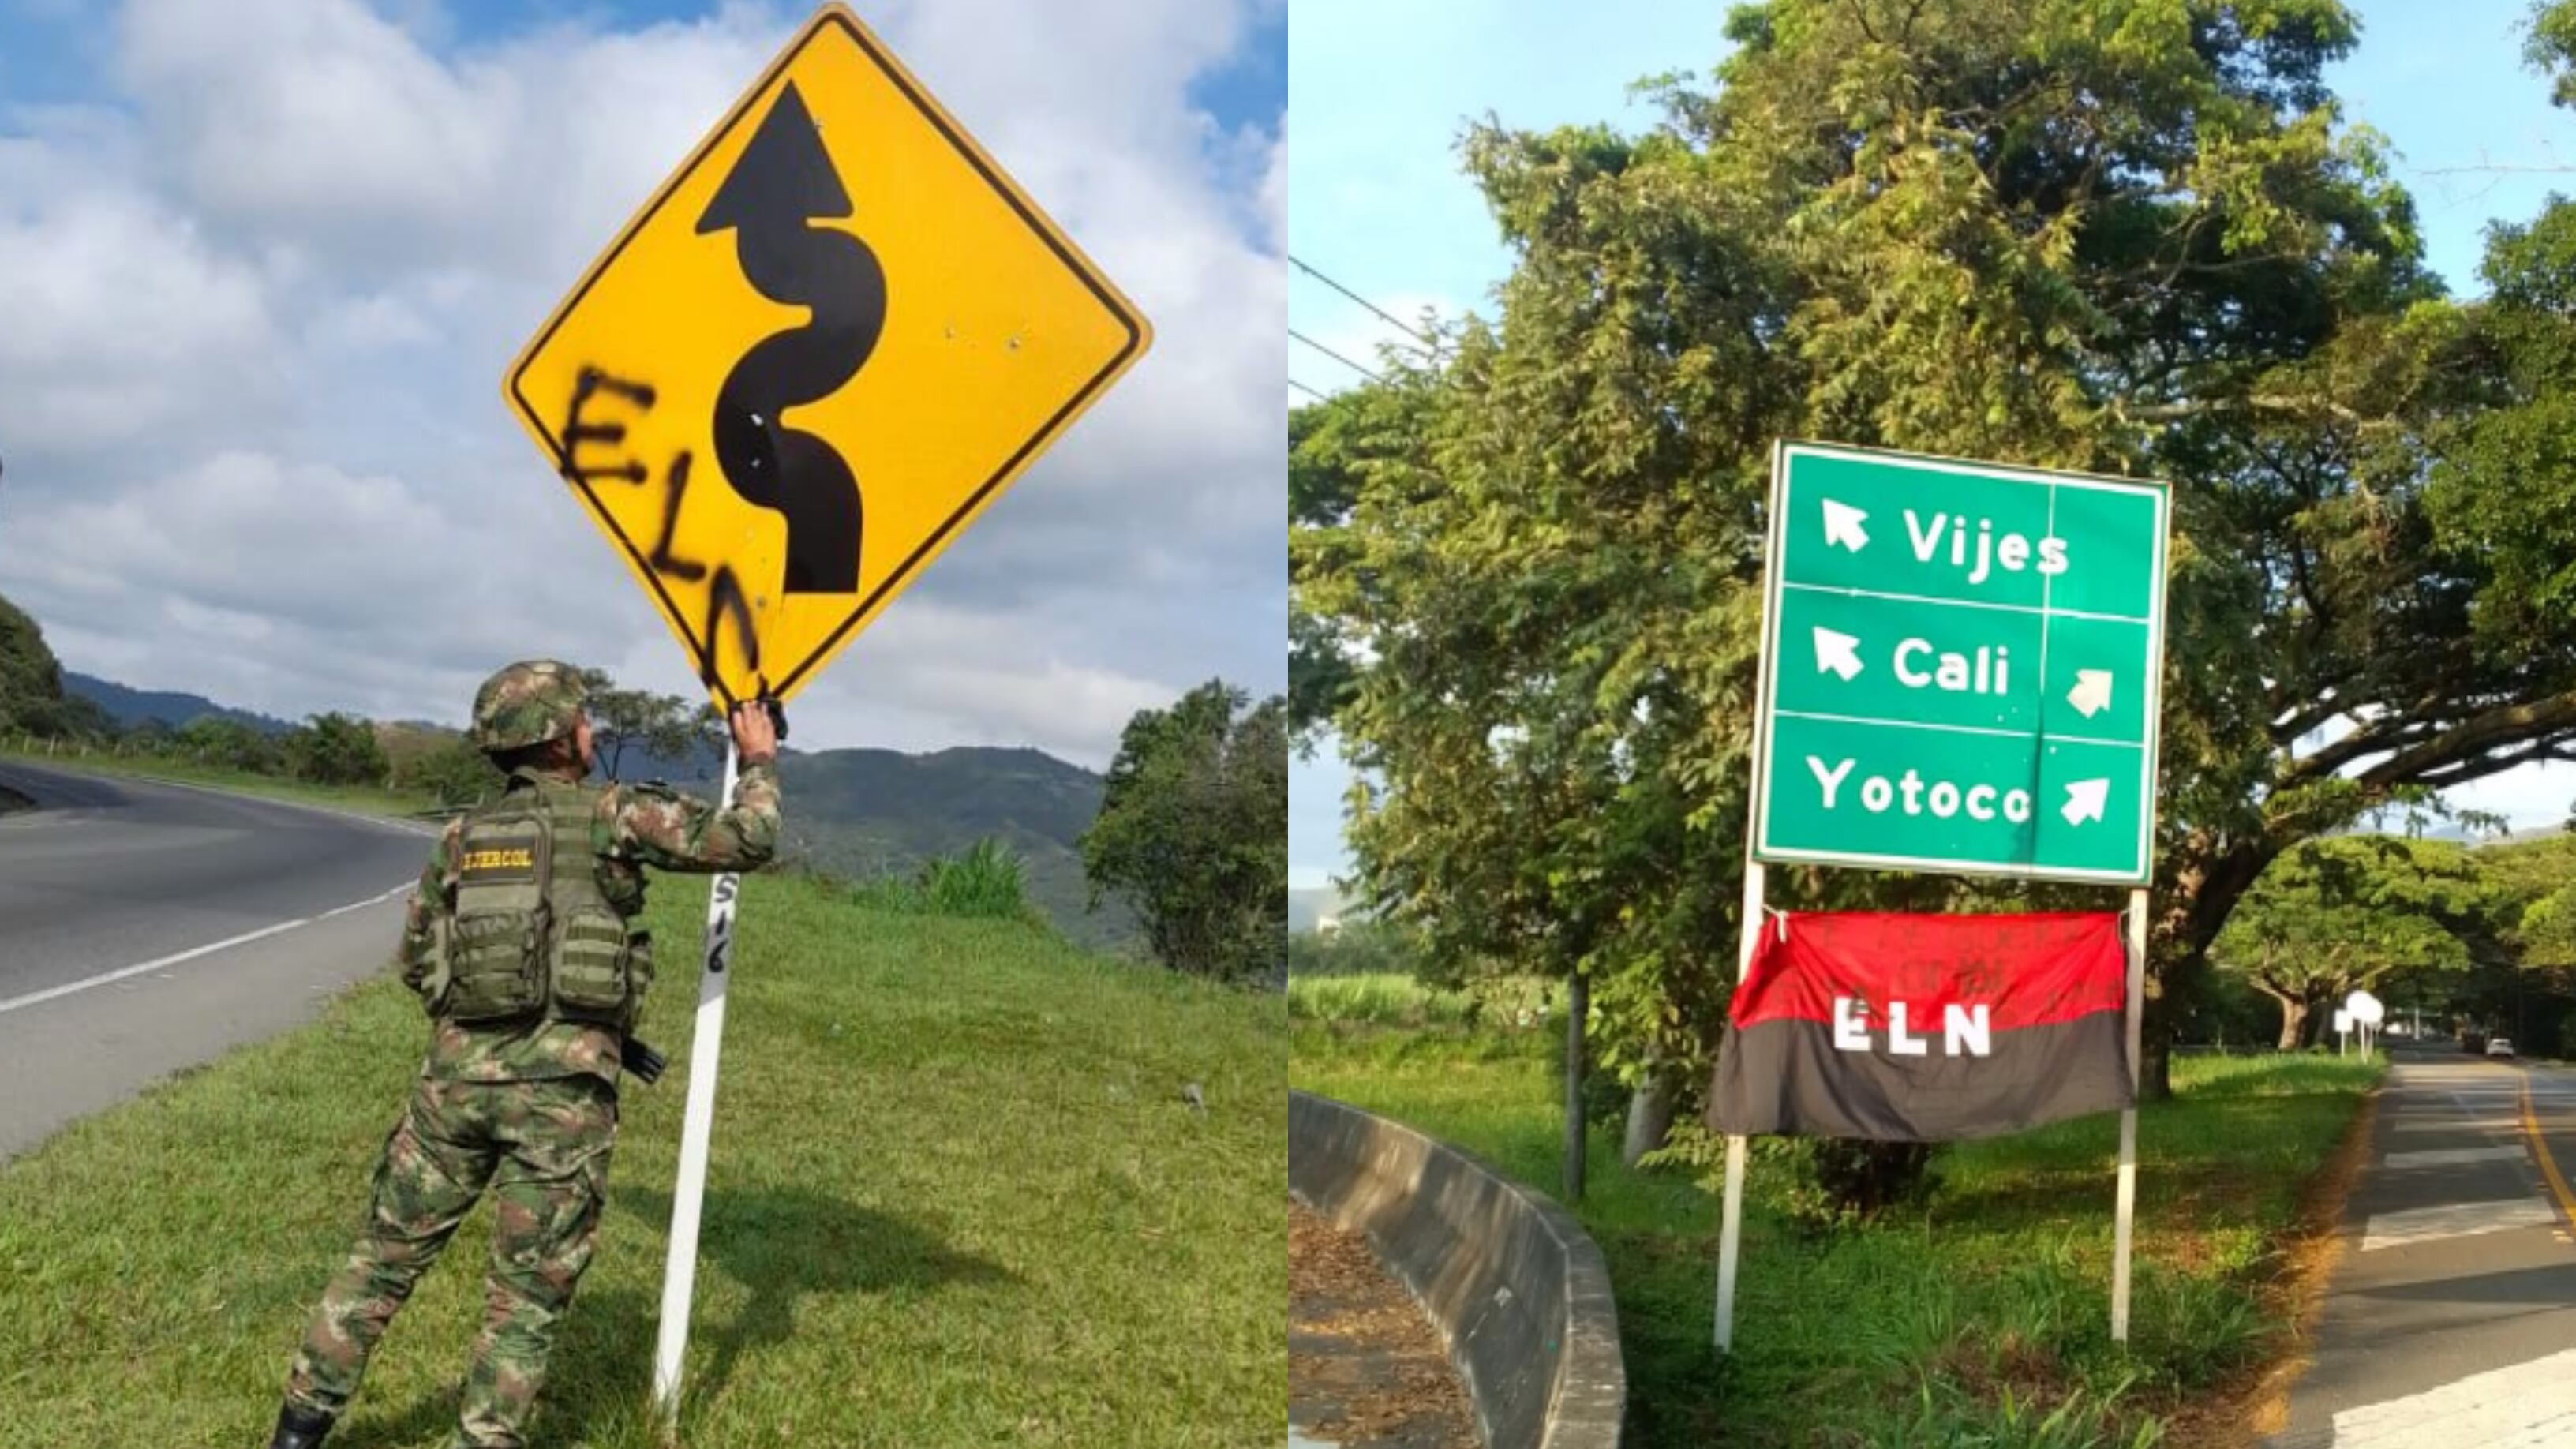 Miembros del Ejército quitando carteles del Eln en vías del Valle del Cauca